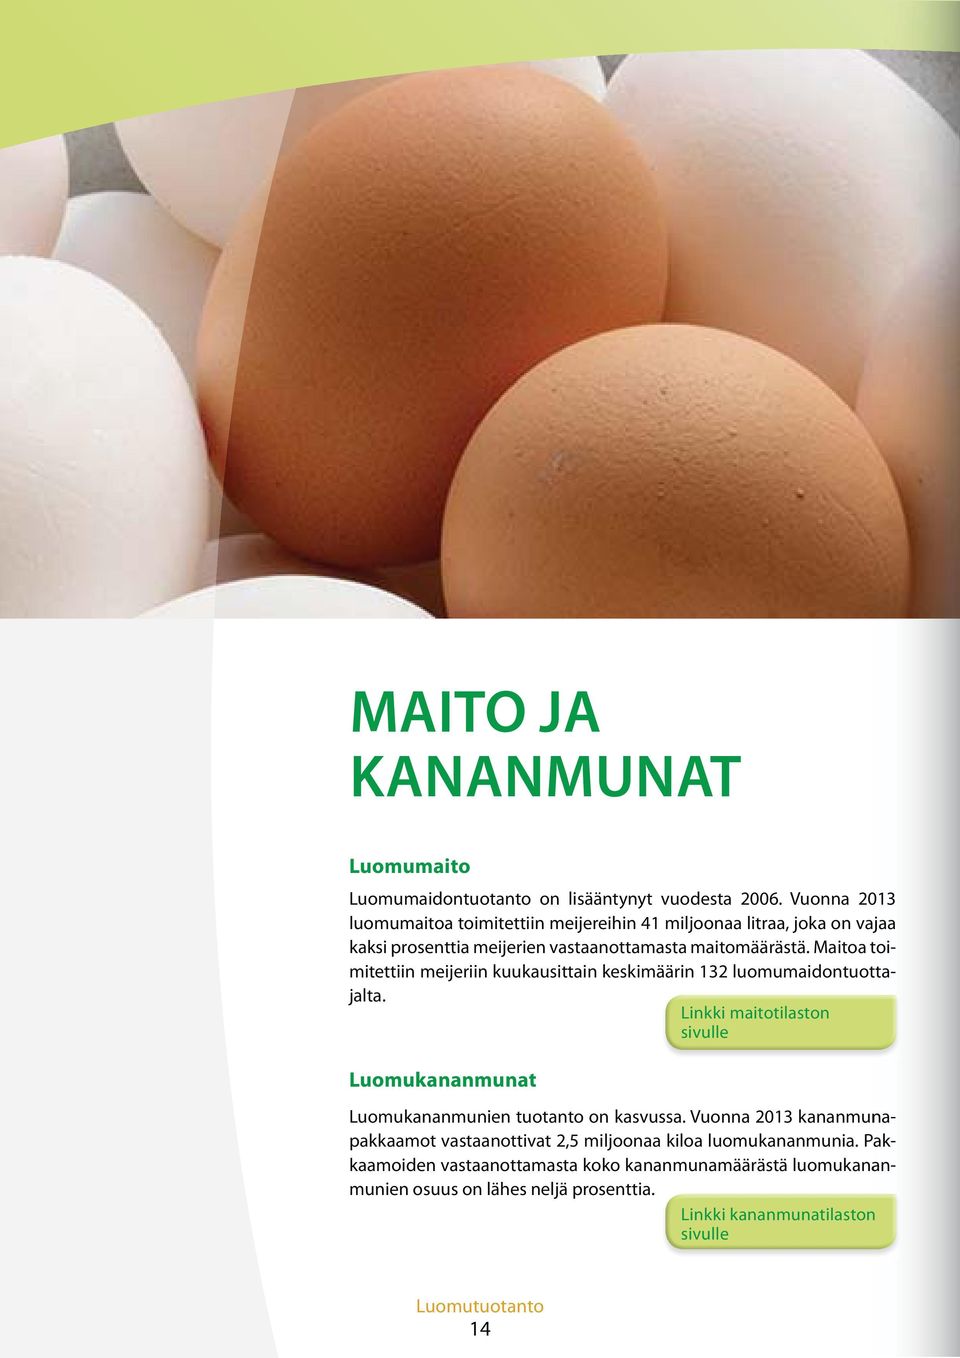 2012 2013 Maitomäärä Maidontuottajat Luomumaidon osuus Pakkaamoiden vastaanottama